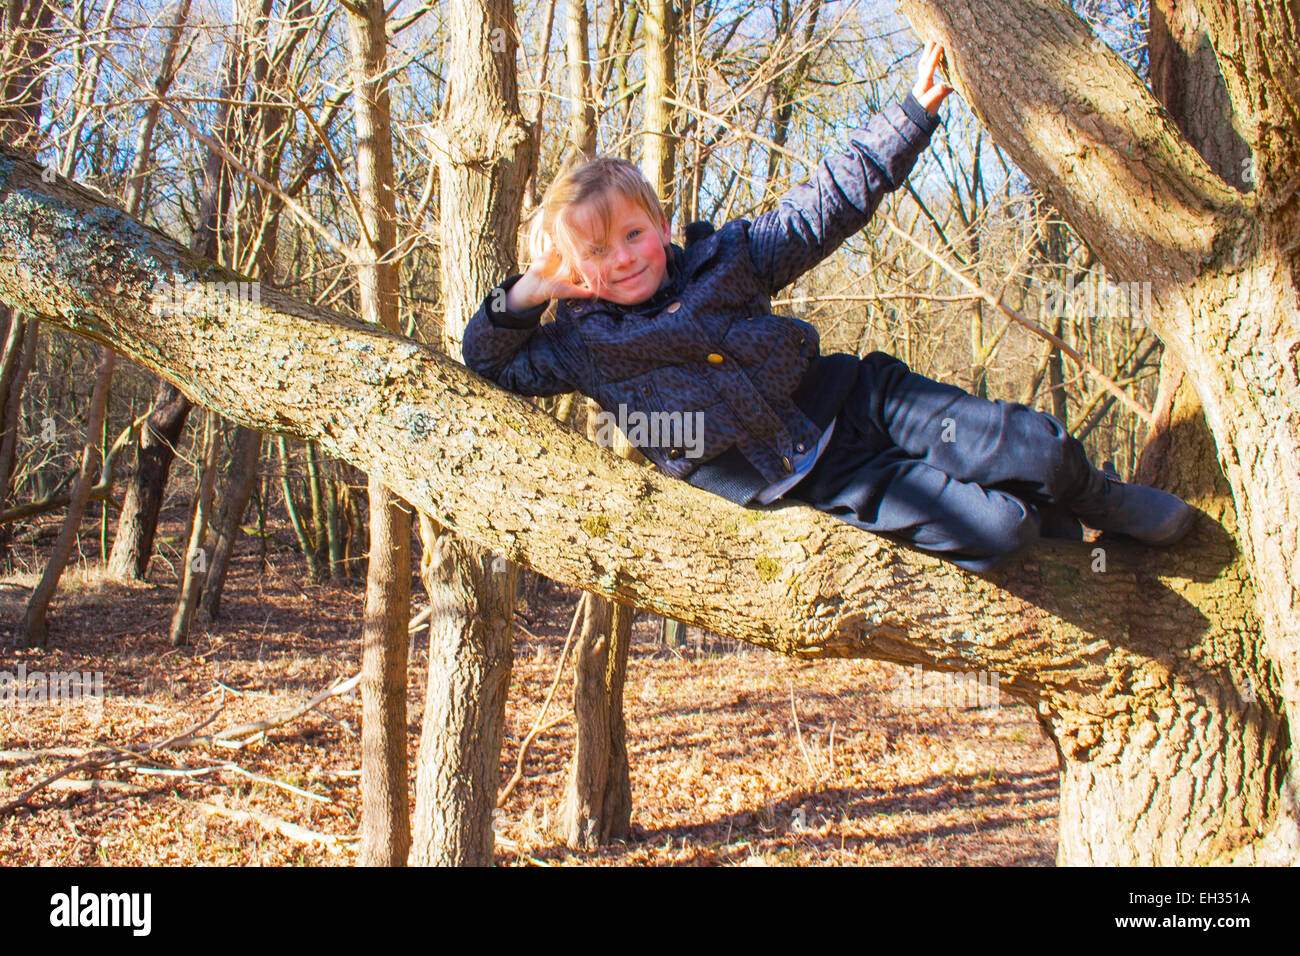 Bambina da sola giacente in una struttura ad albero nella foresta con bleu sky Foto Stock